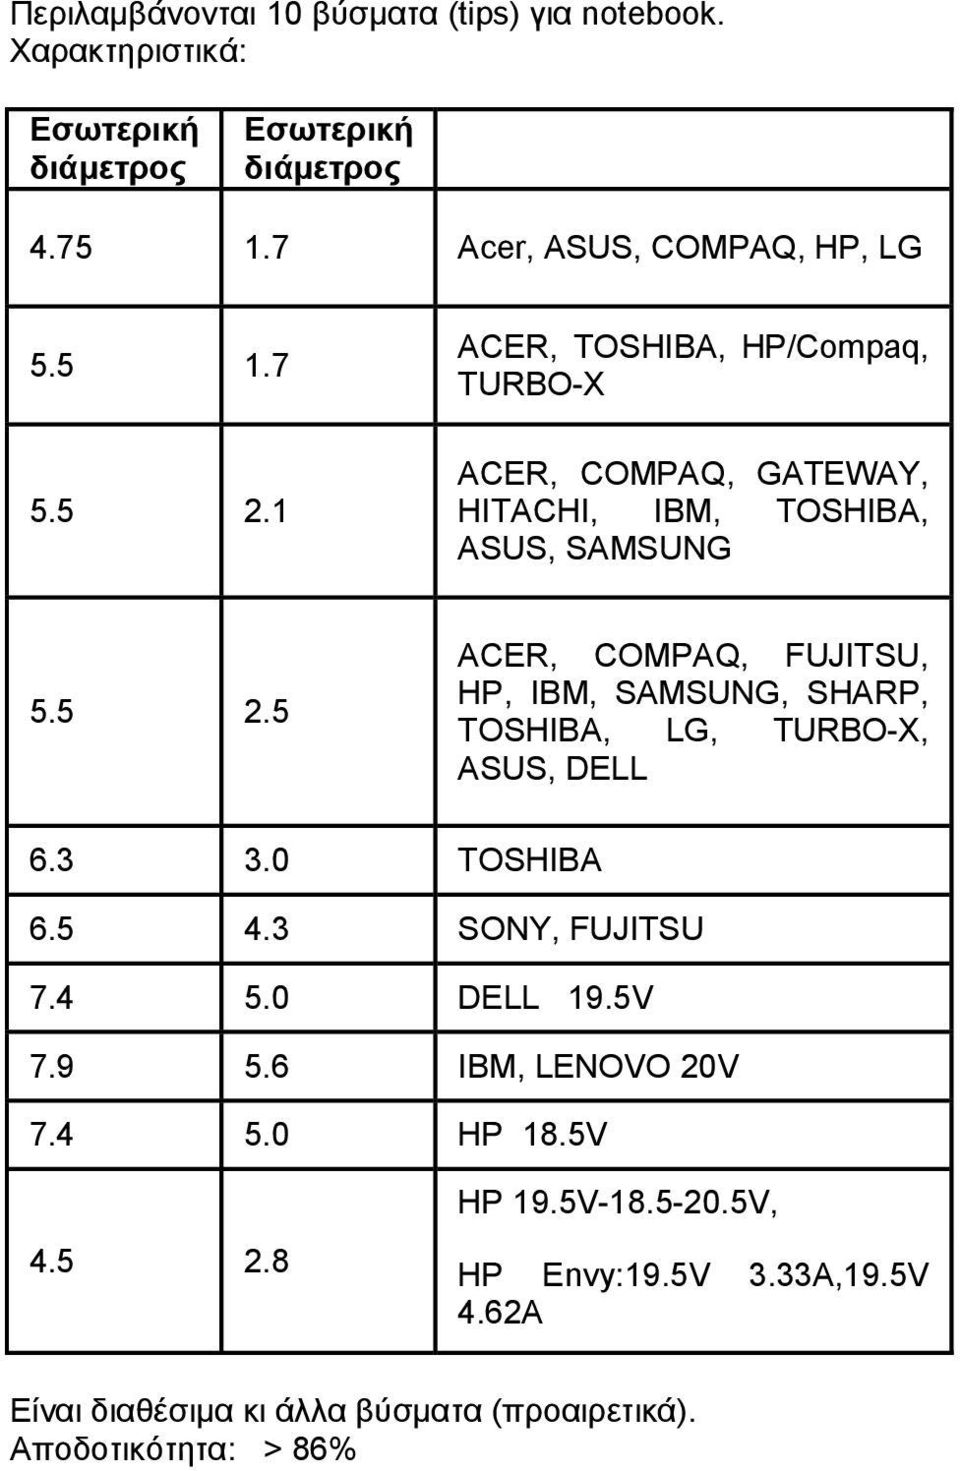 3 3.0 TOSHIBA 6.5 4.3 SONY, FUJITSU 7.4 5.0 DELL 19.5V 7.9 5.6 IBM, LENOVO 20V 7.4 5.0 HP 18.5V 4.5 2.8 HP 19.5V-18.5-20.5V, HP Envy:19.5V 3.